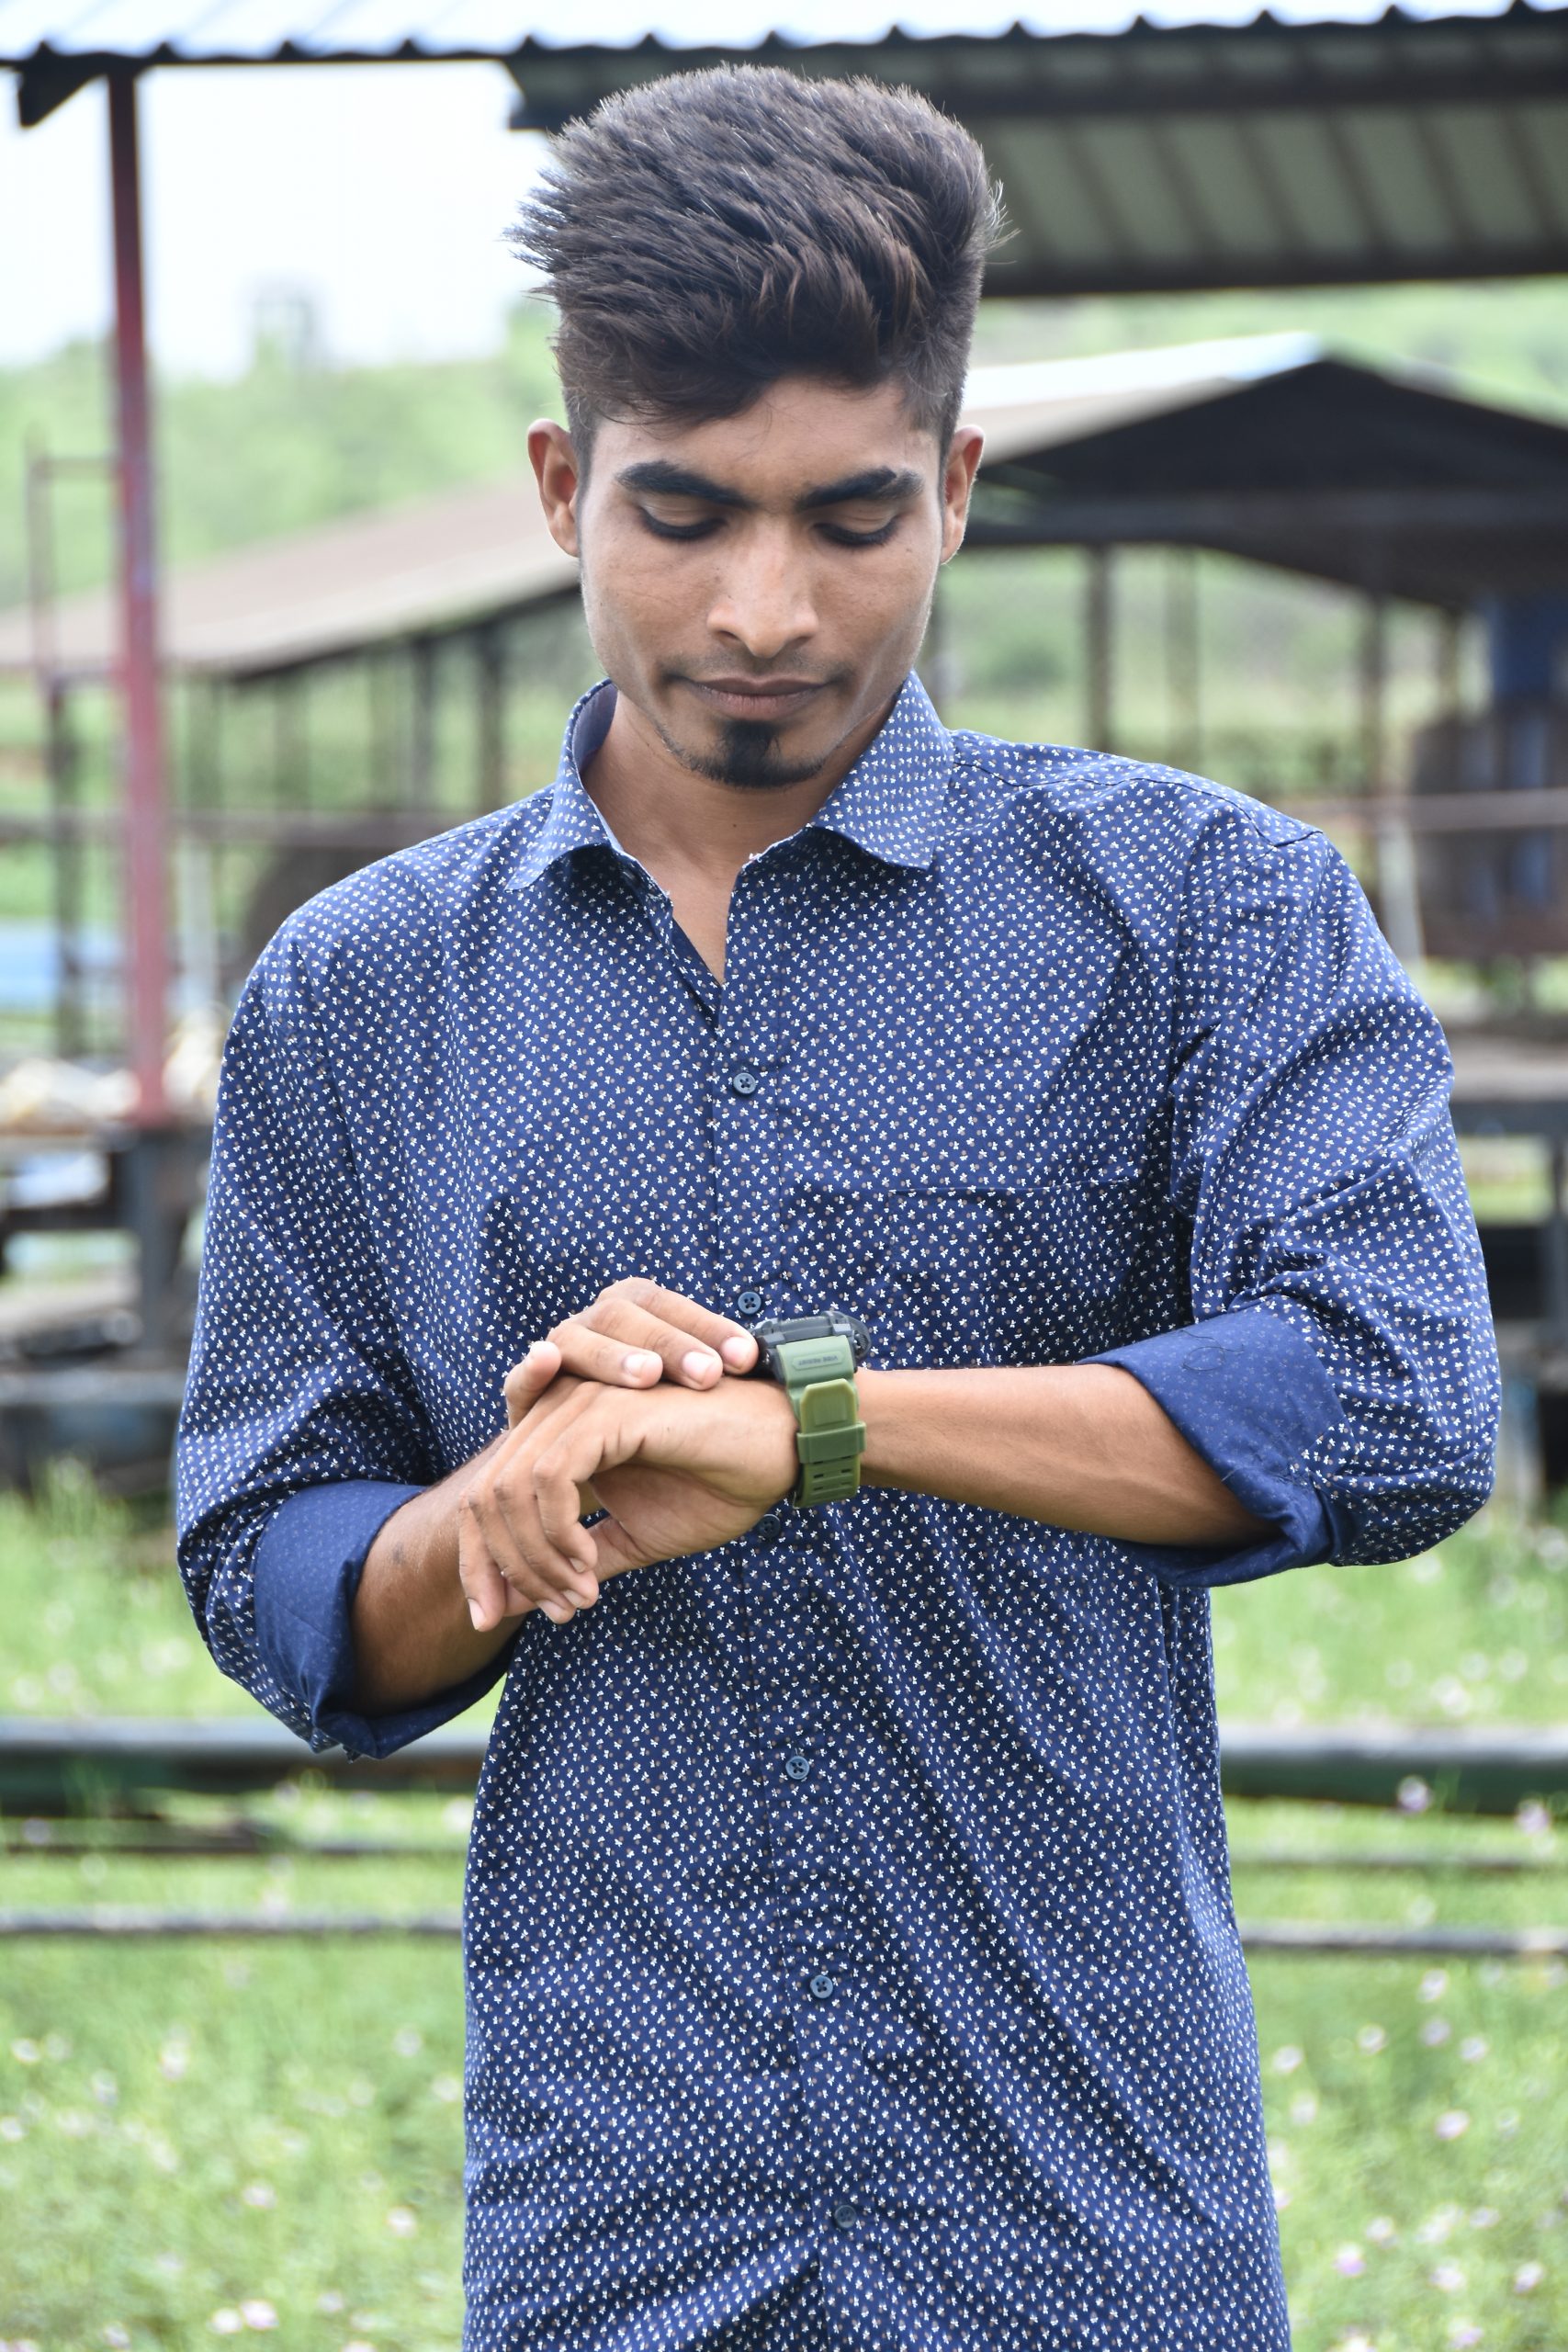 Boy posing with wrist watch